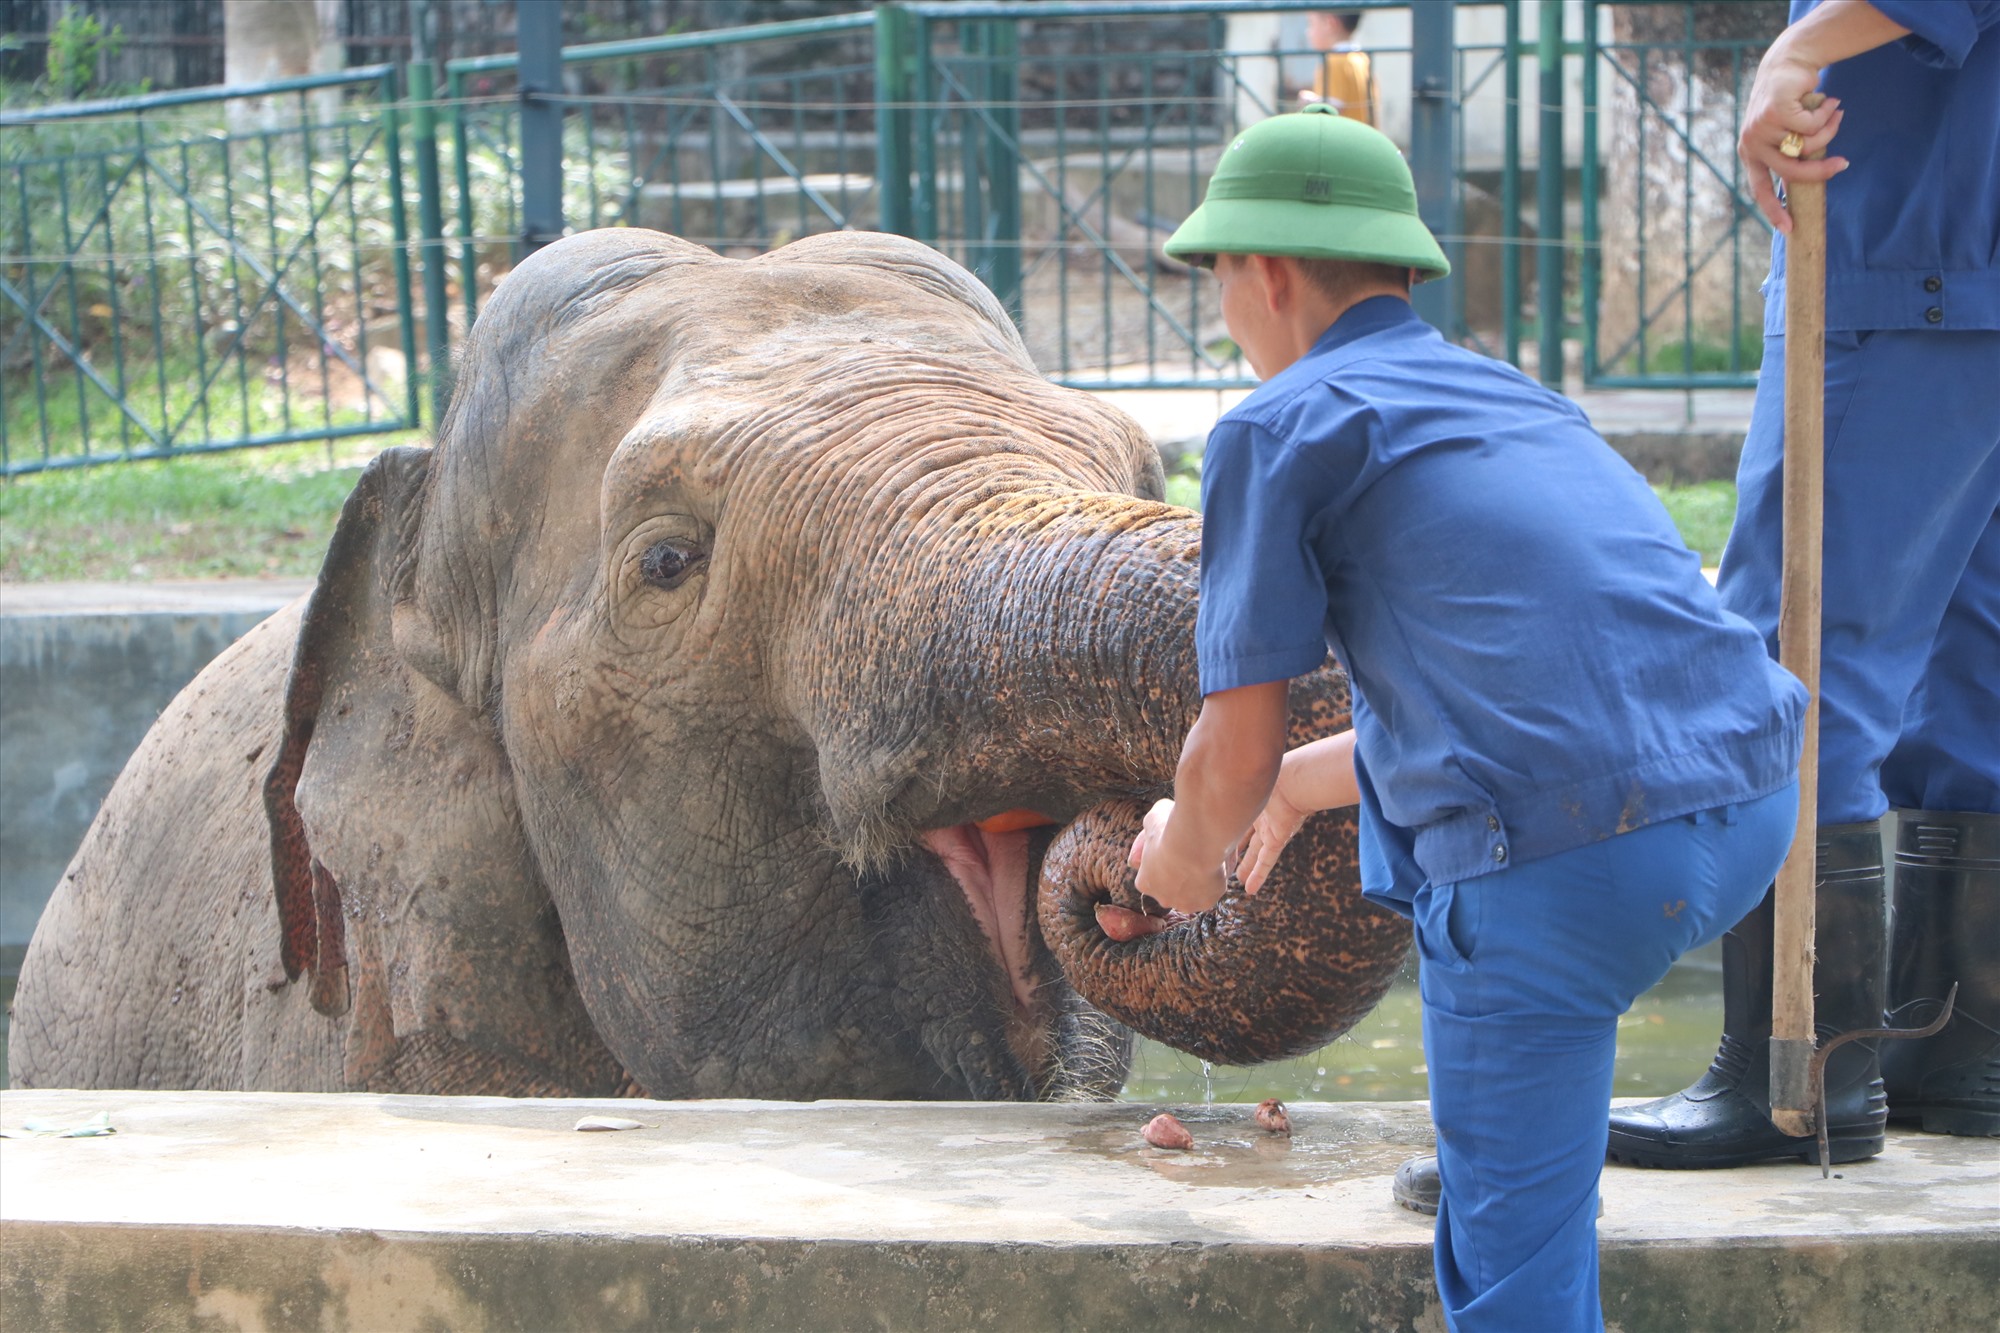 Sáng sớm, voi sẽ được ăn các loại thức ăn xanh như cỏ, thân chuối. Sau đó, nhân viên sẽ dọn vệ sinh, tắm cho voi và cho voi đi lại vận động trong khuôn viên.